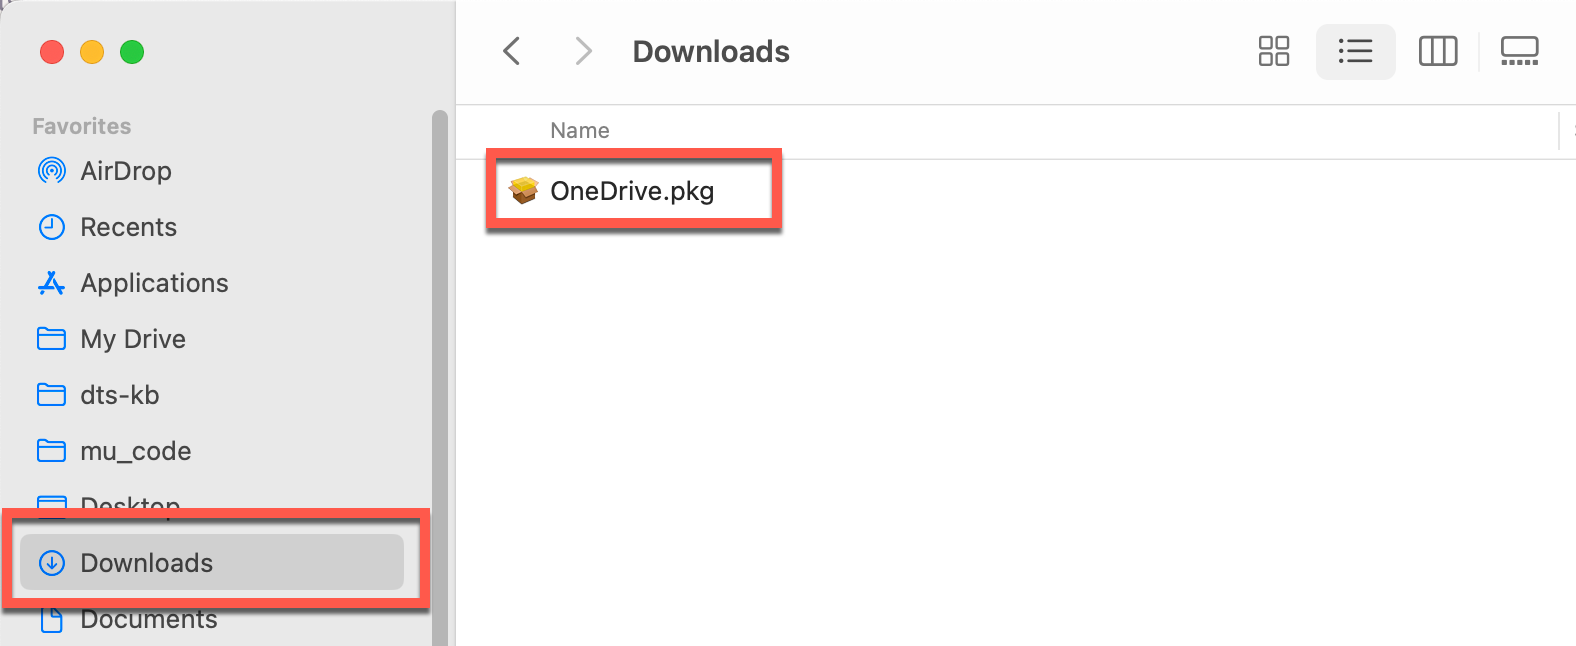 OneDrive pkg in Downloads folder